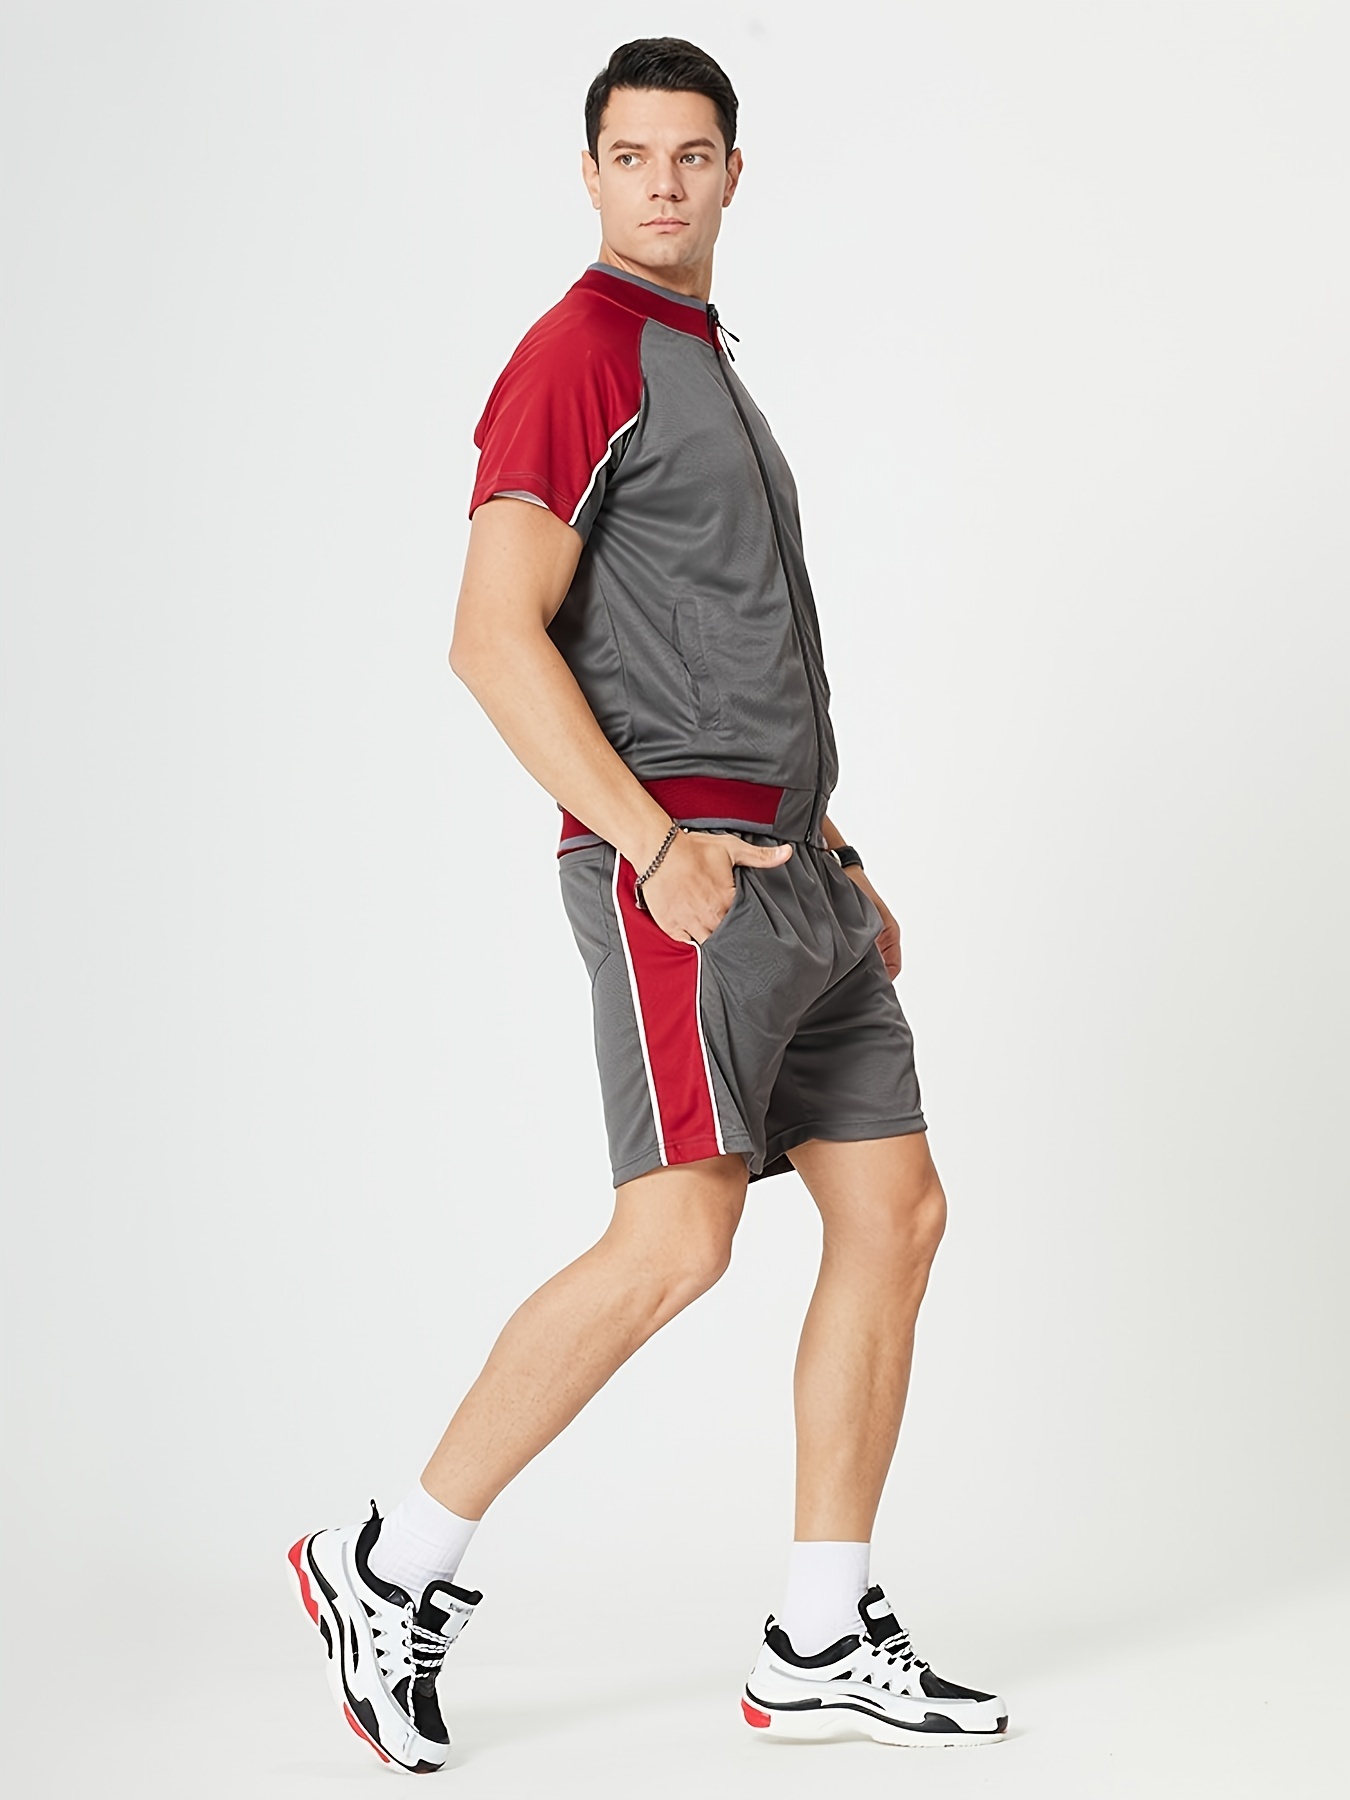 Men's Outdoor Fitness Jogging Short Set With Zip-up Short Sleeve